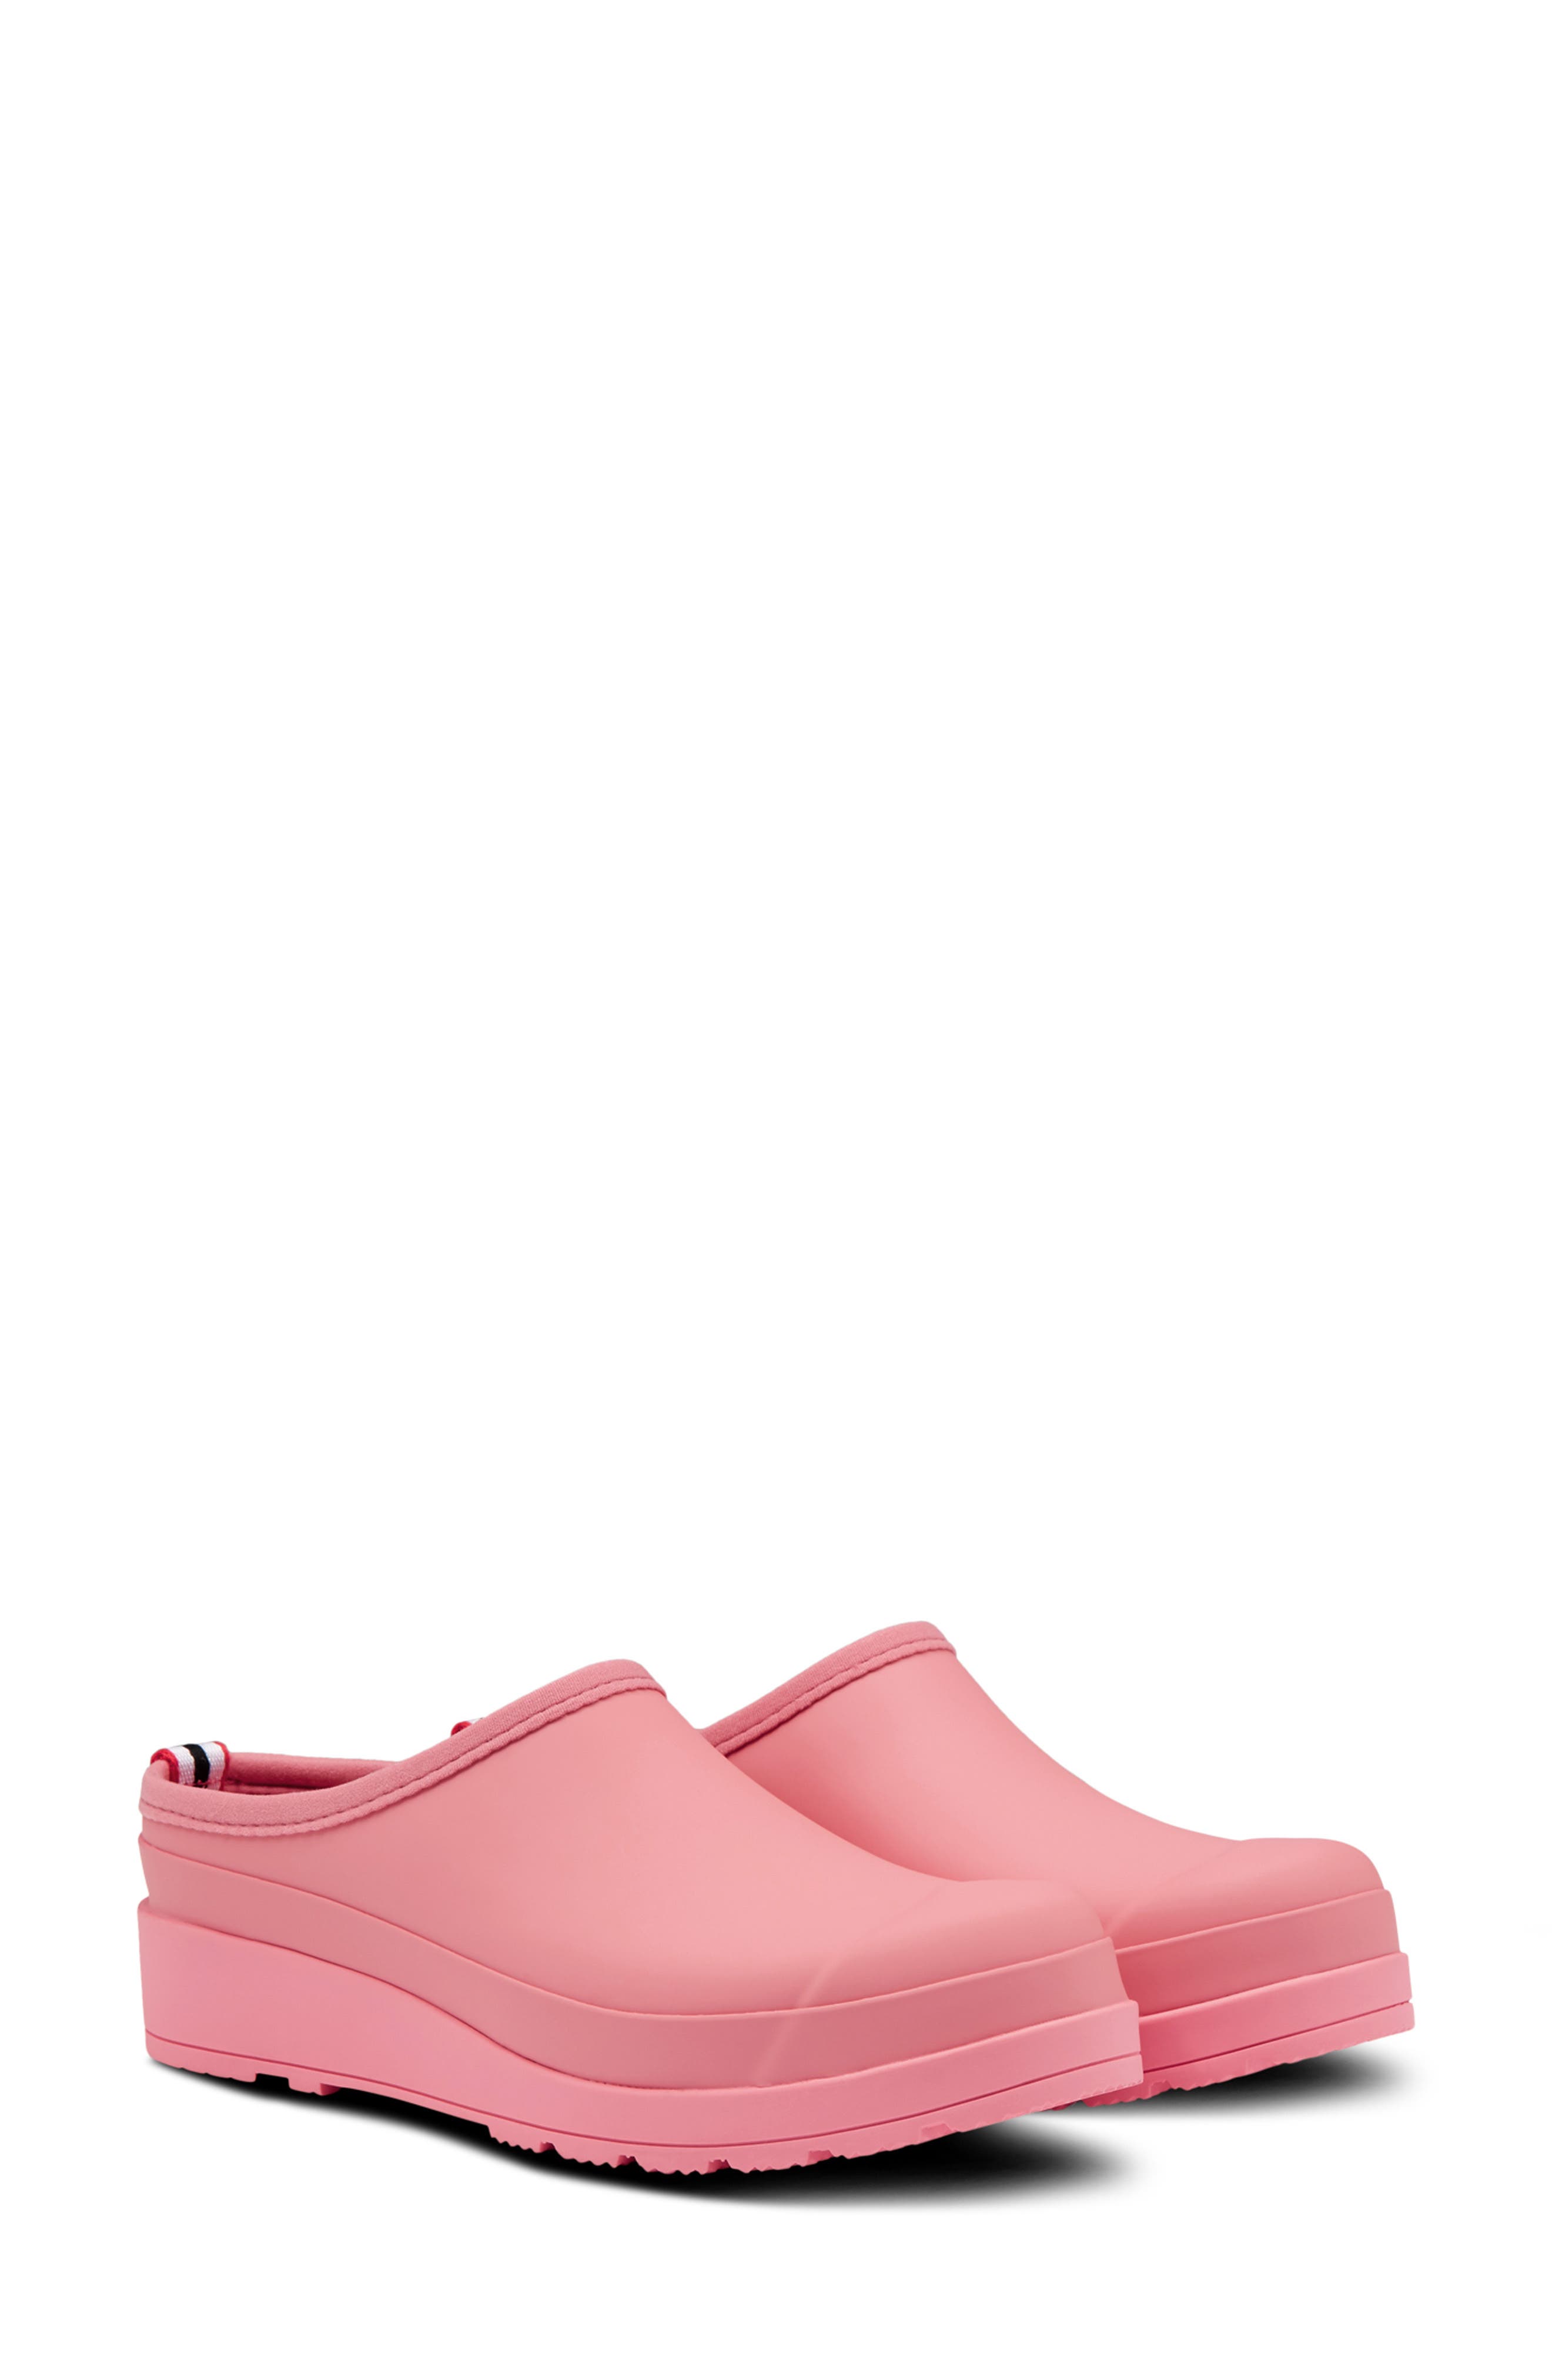 ladies pink slip on shoes